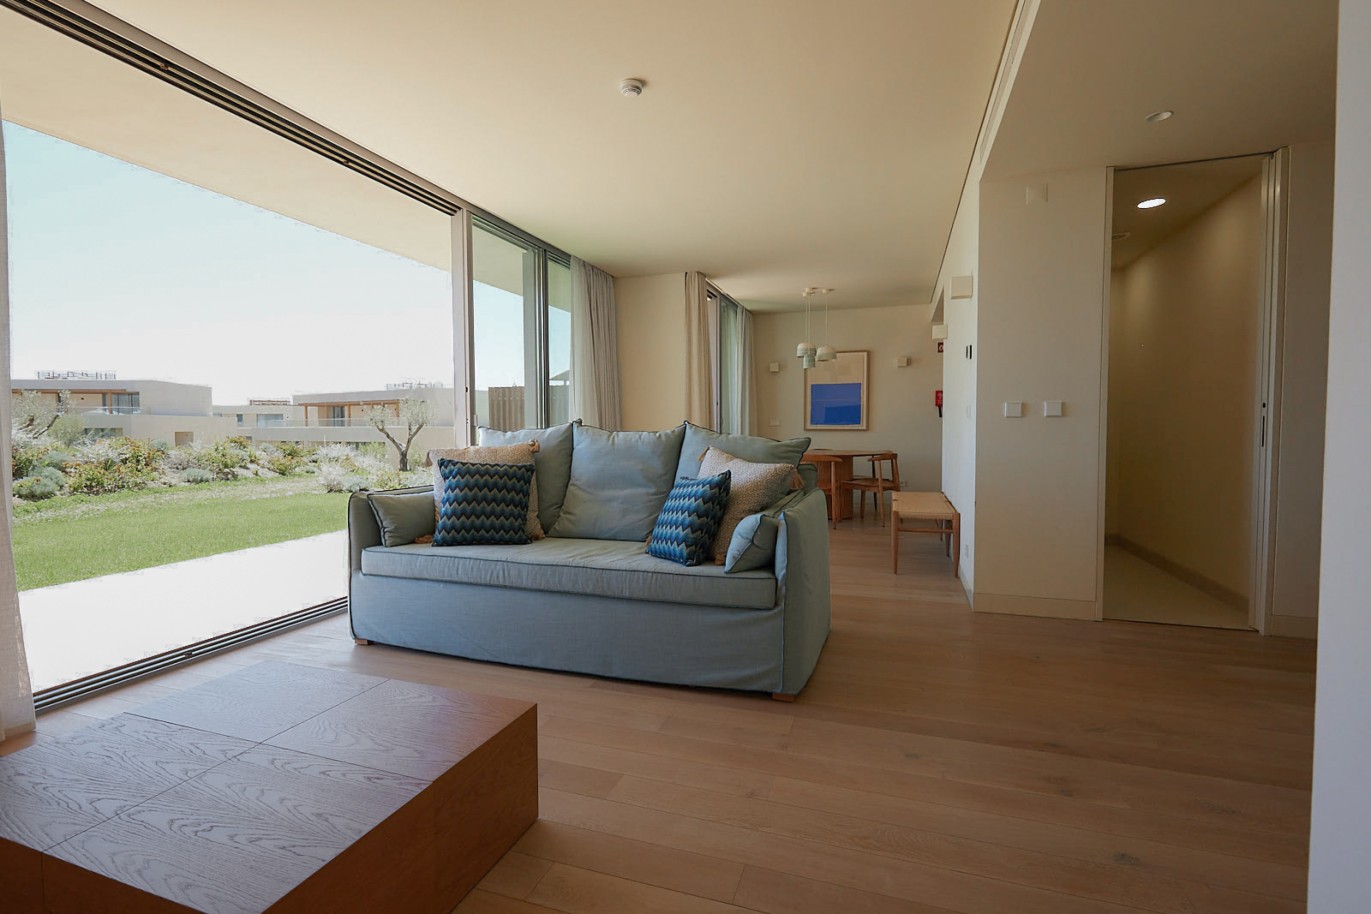 Piso de 2 dormitorios en complejo, en venta en Porches, Algarve_230583